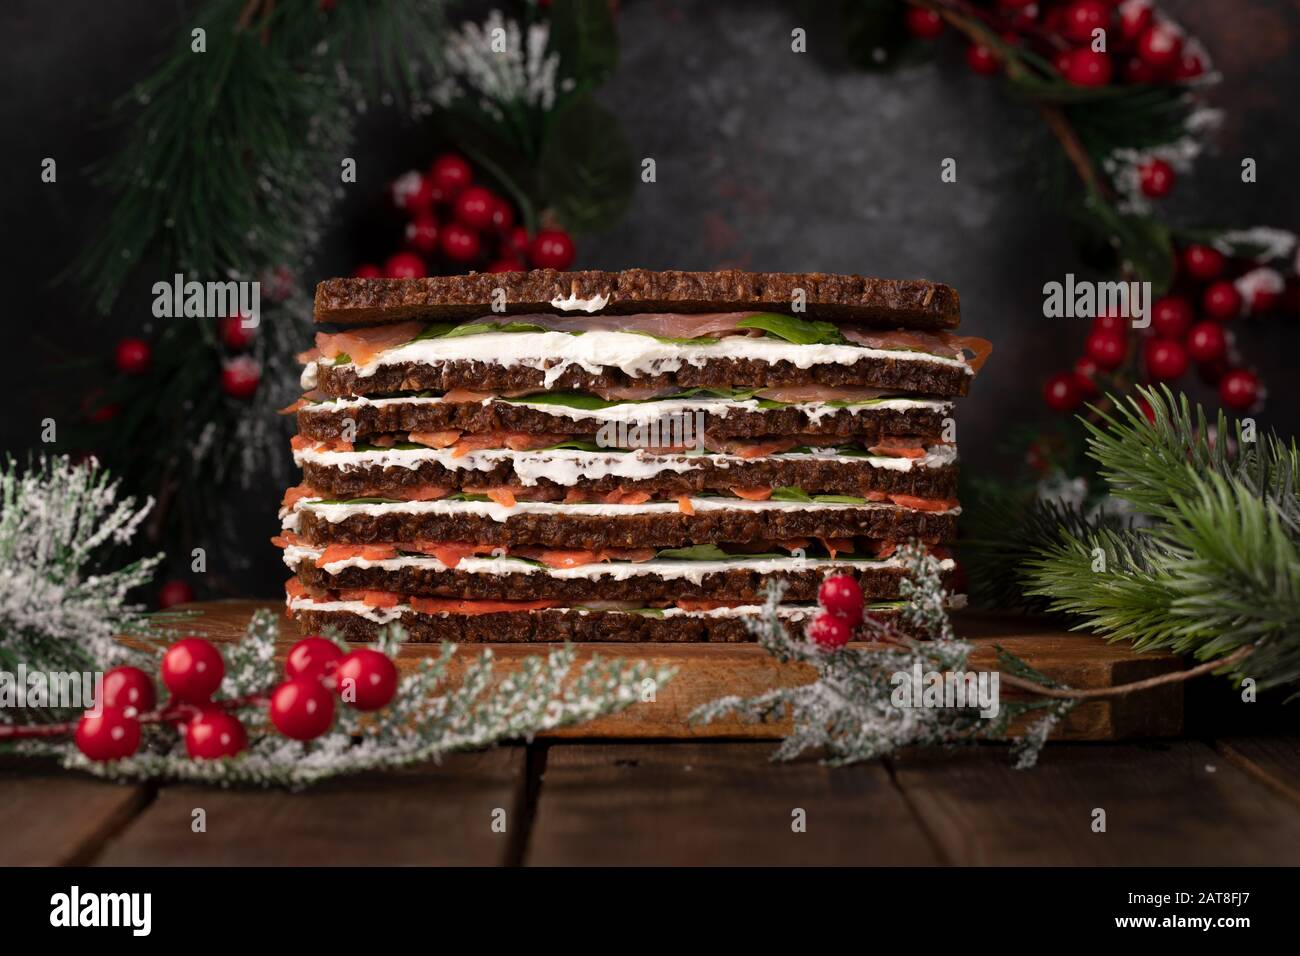 Lachskuchen aus mehreren wechselnden Lagen Roggenbrot, Frischkäse, Scheiben von Räucherlachs und Spinatblättern, zu Weihnachten dekoriert. Stockfoto